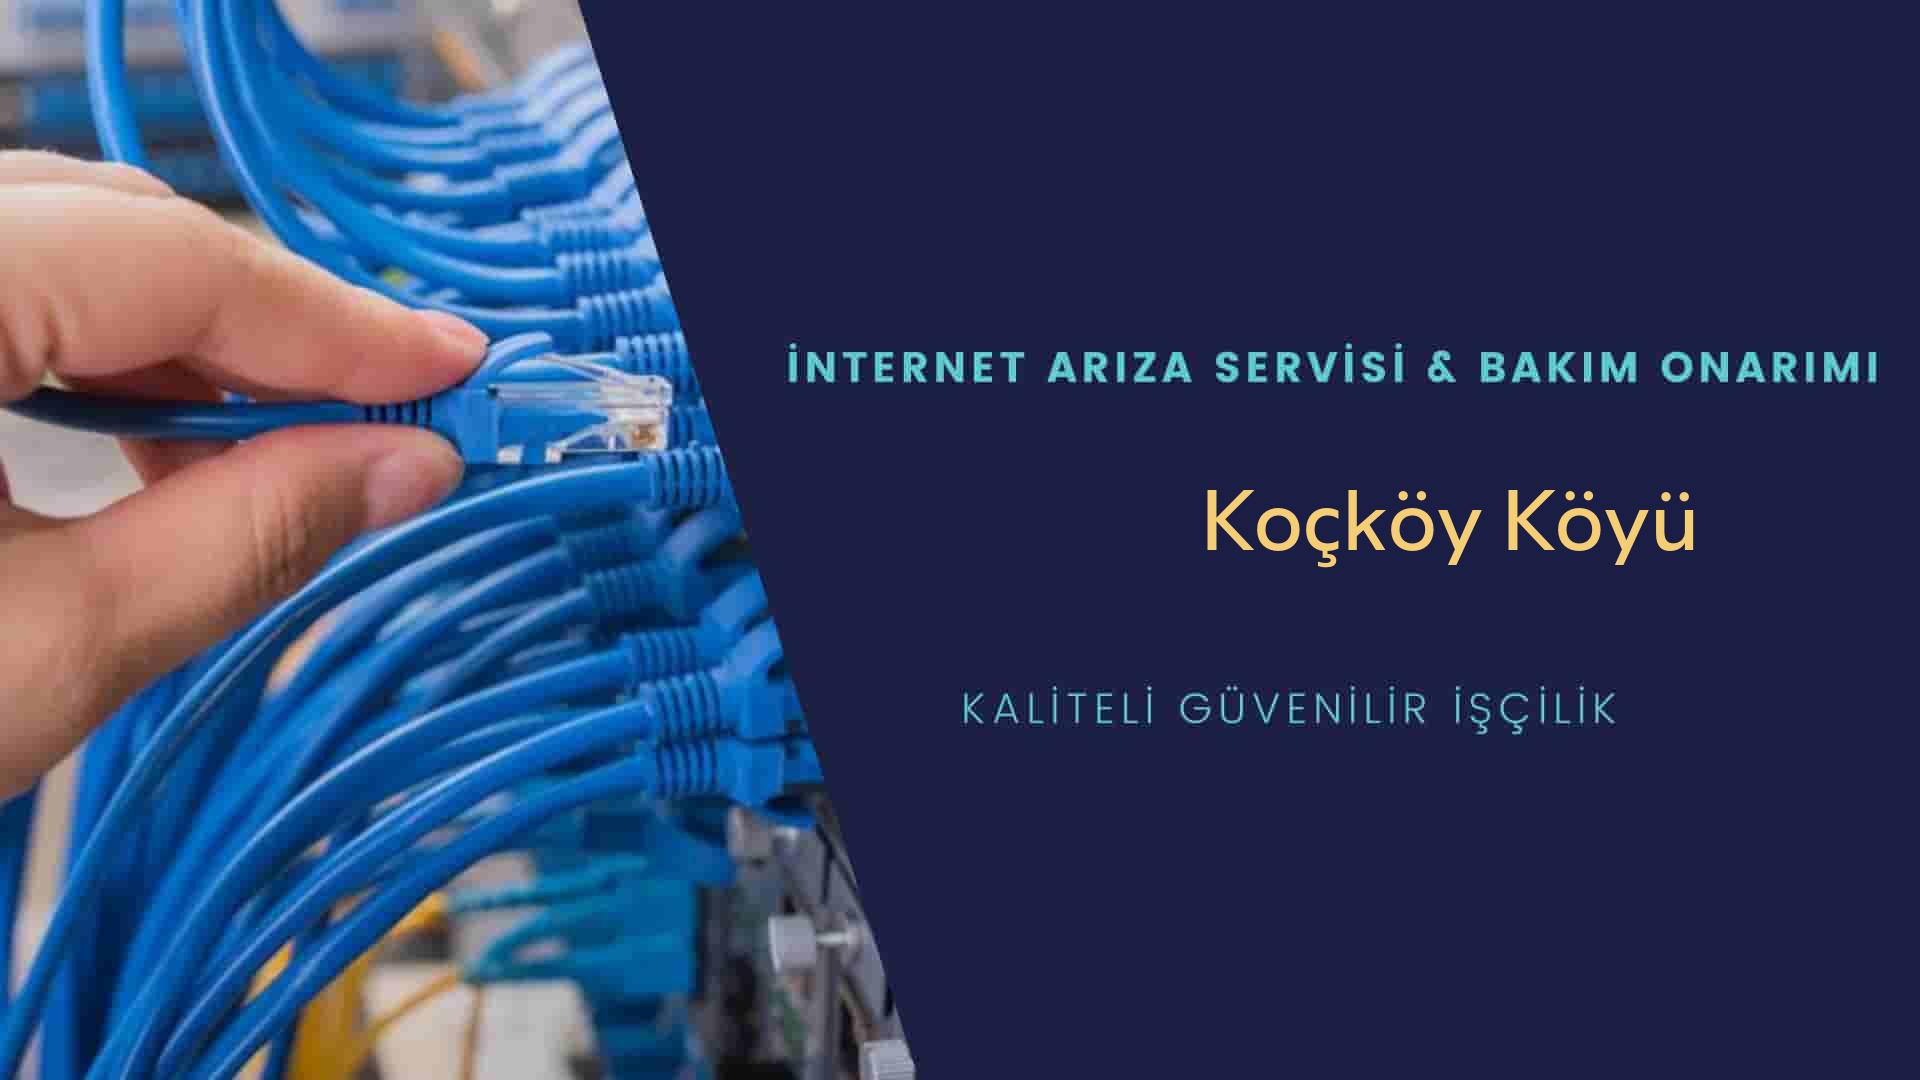 Kocköy Köyü internet kablosu çekimi yapan yerler veya elektrikçiler mi? arıyorsunuz doğru yerdesiniz o zaman sizlere 7/24 yardımcı olacak profesyonel ustalarımız bir telefon kadar yakındır size.